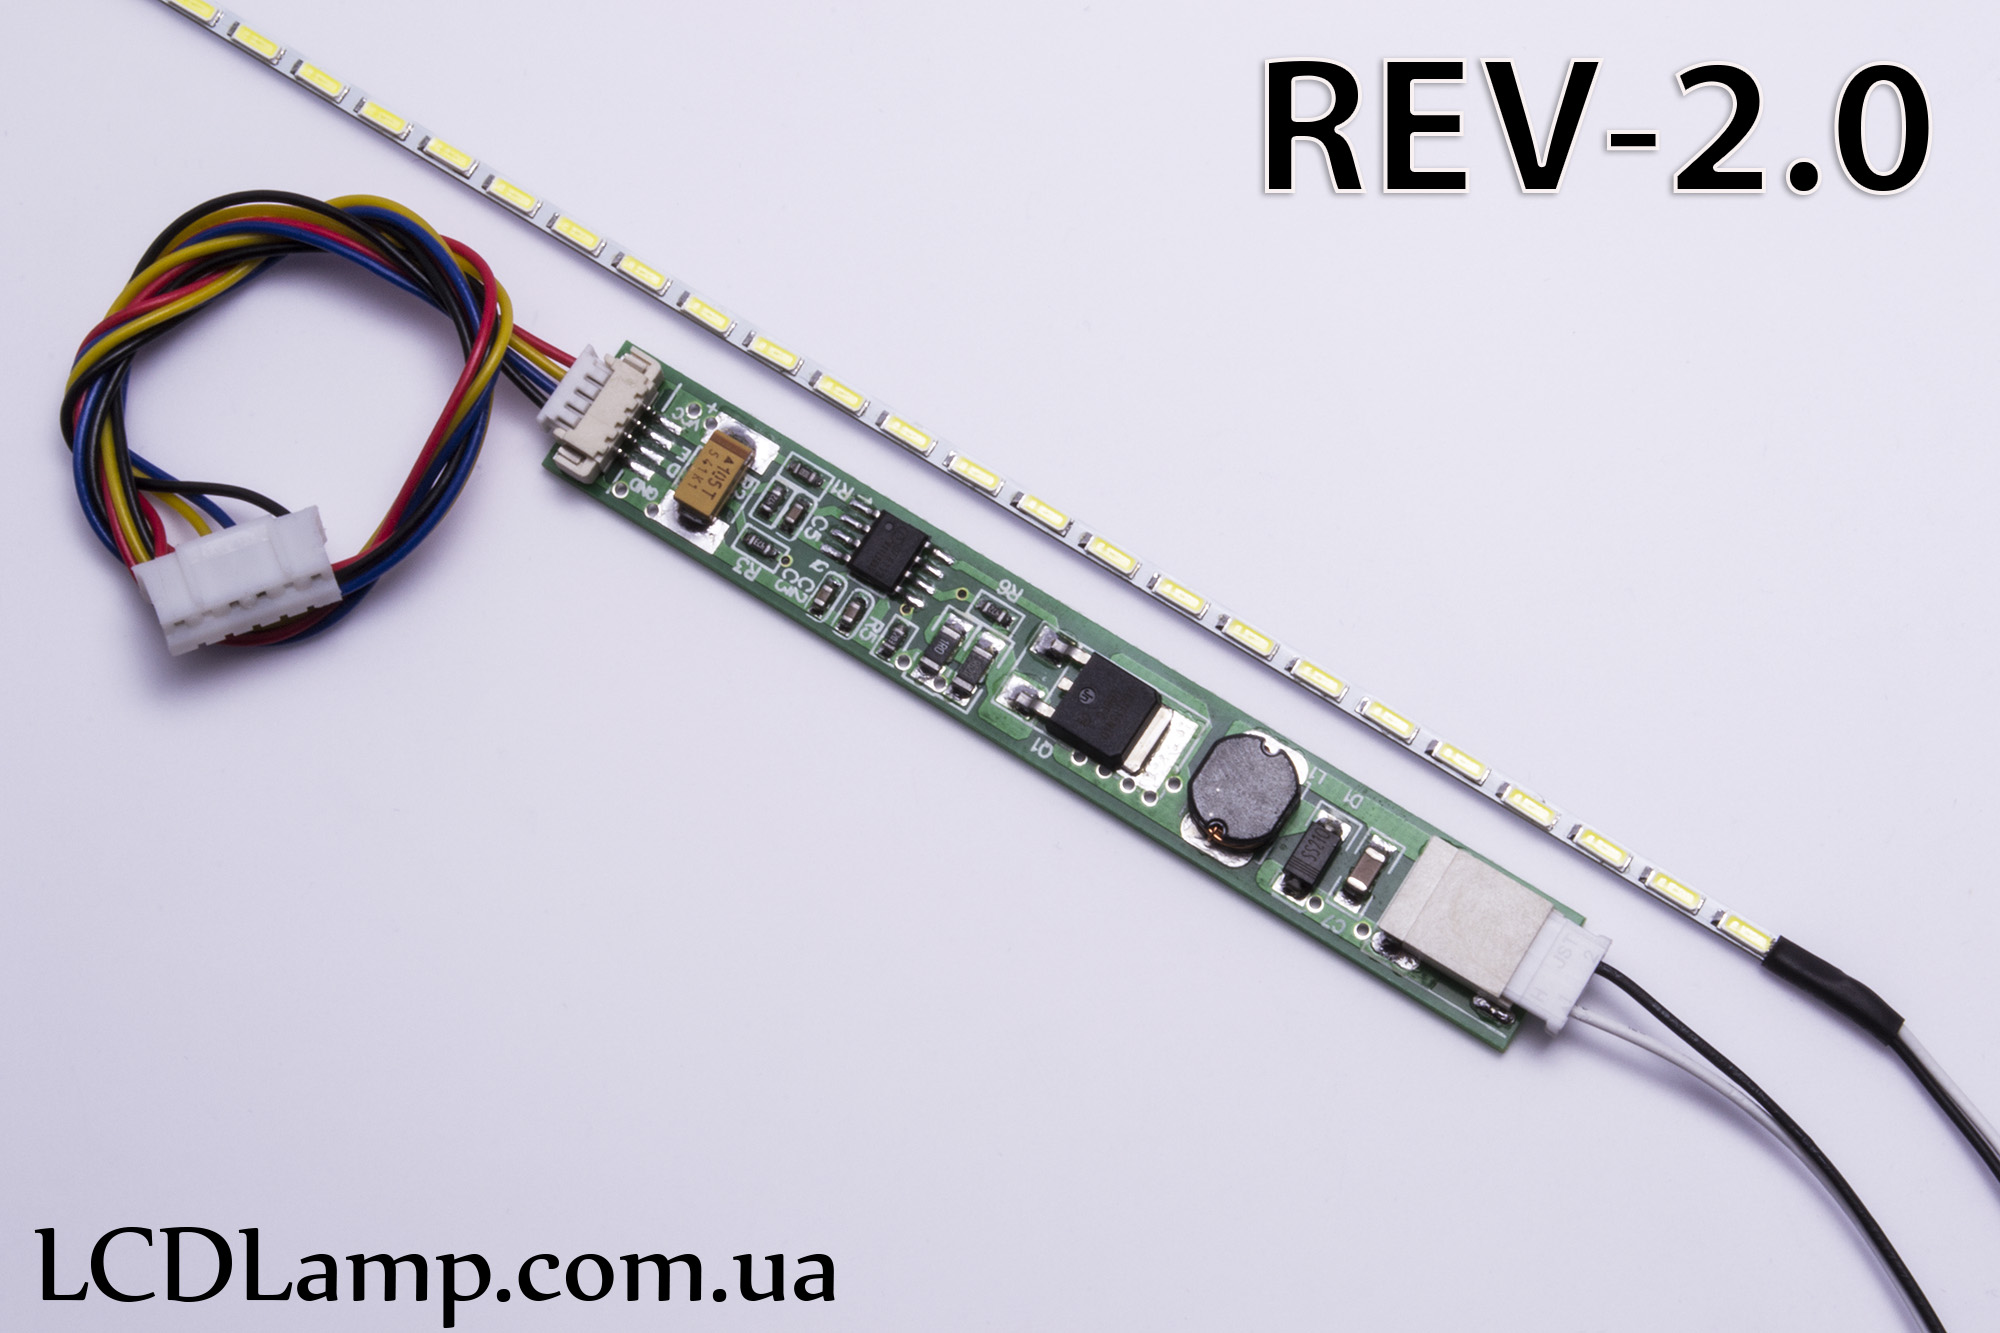 LED набор для ноутбука Rev-2.0 (328мм.)